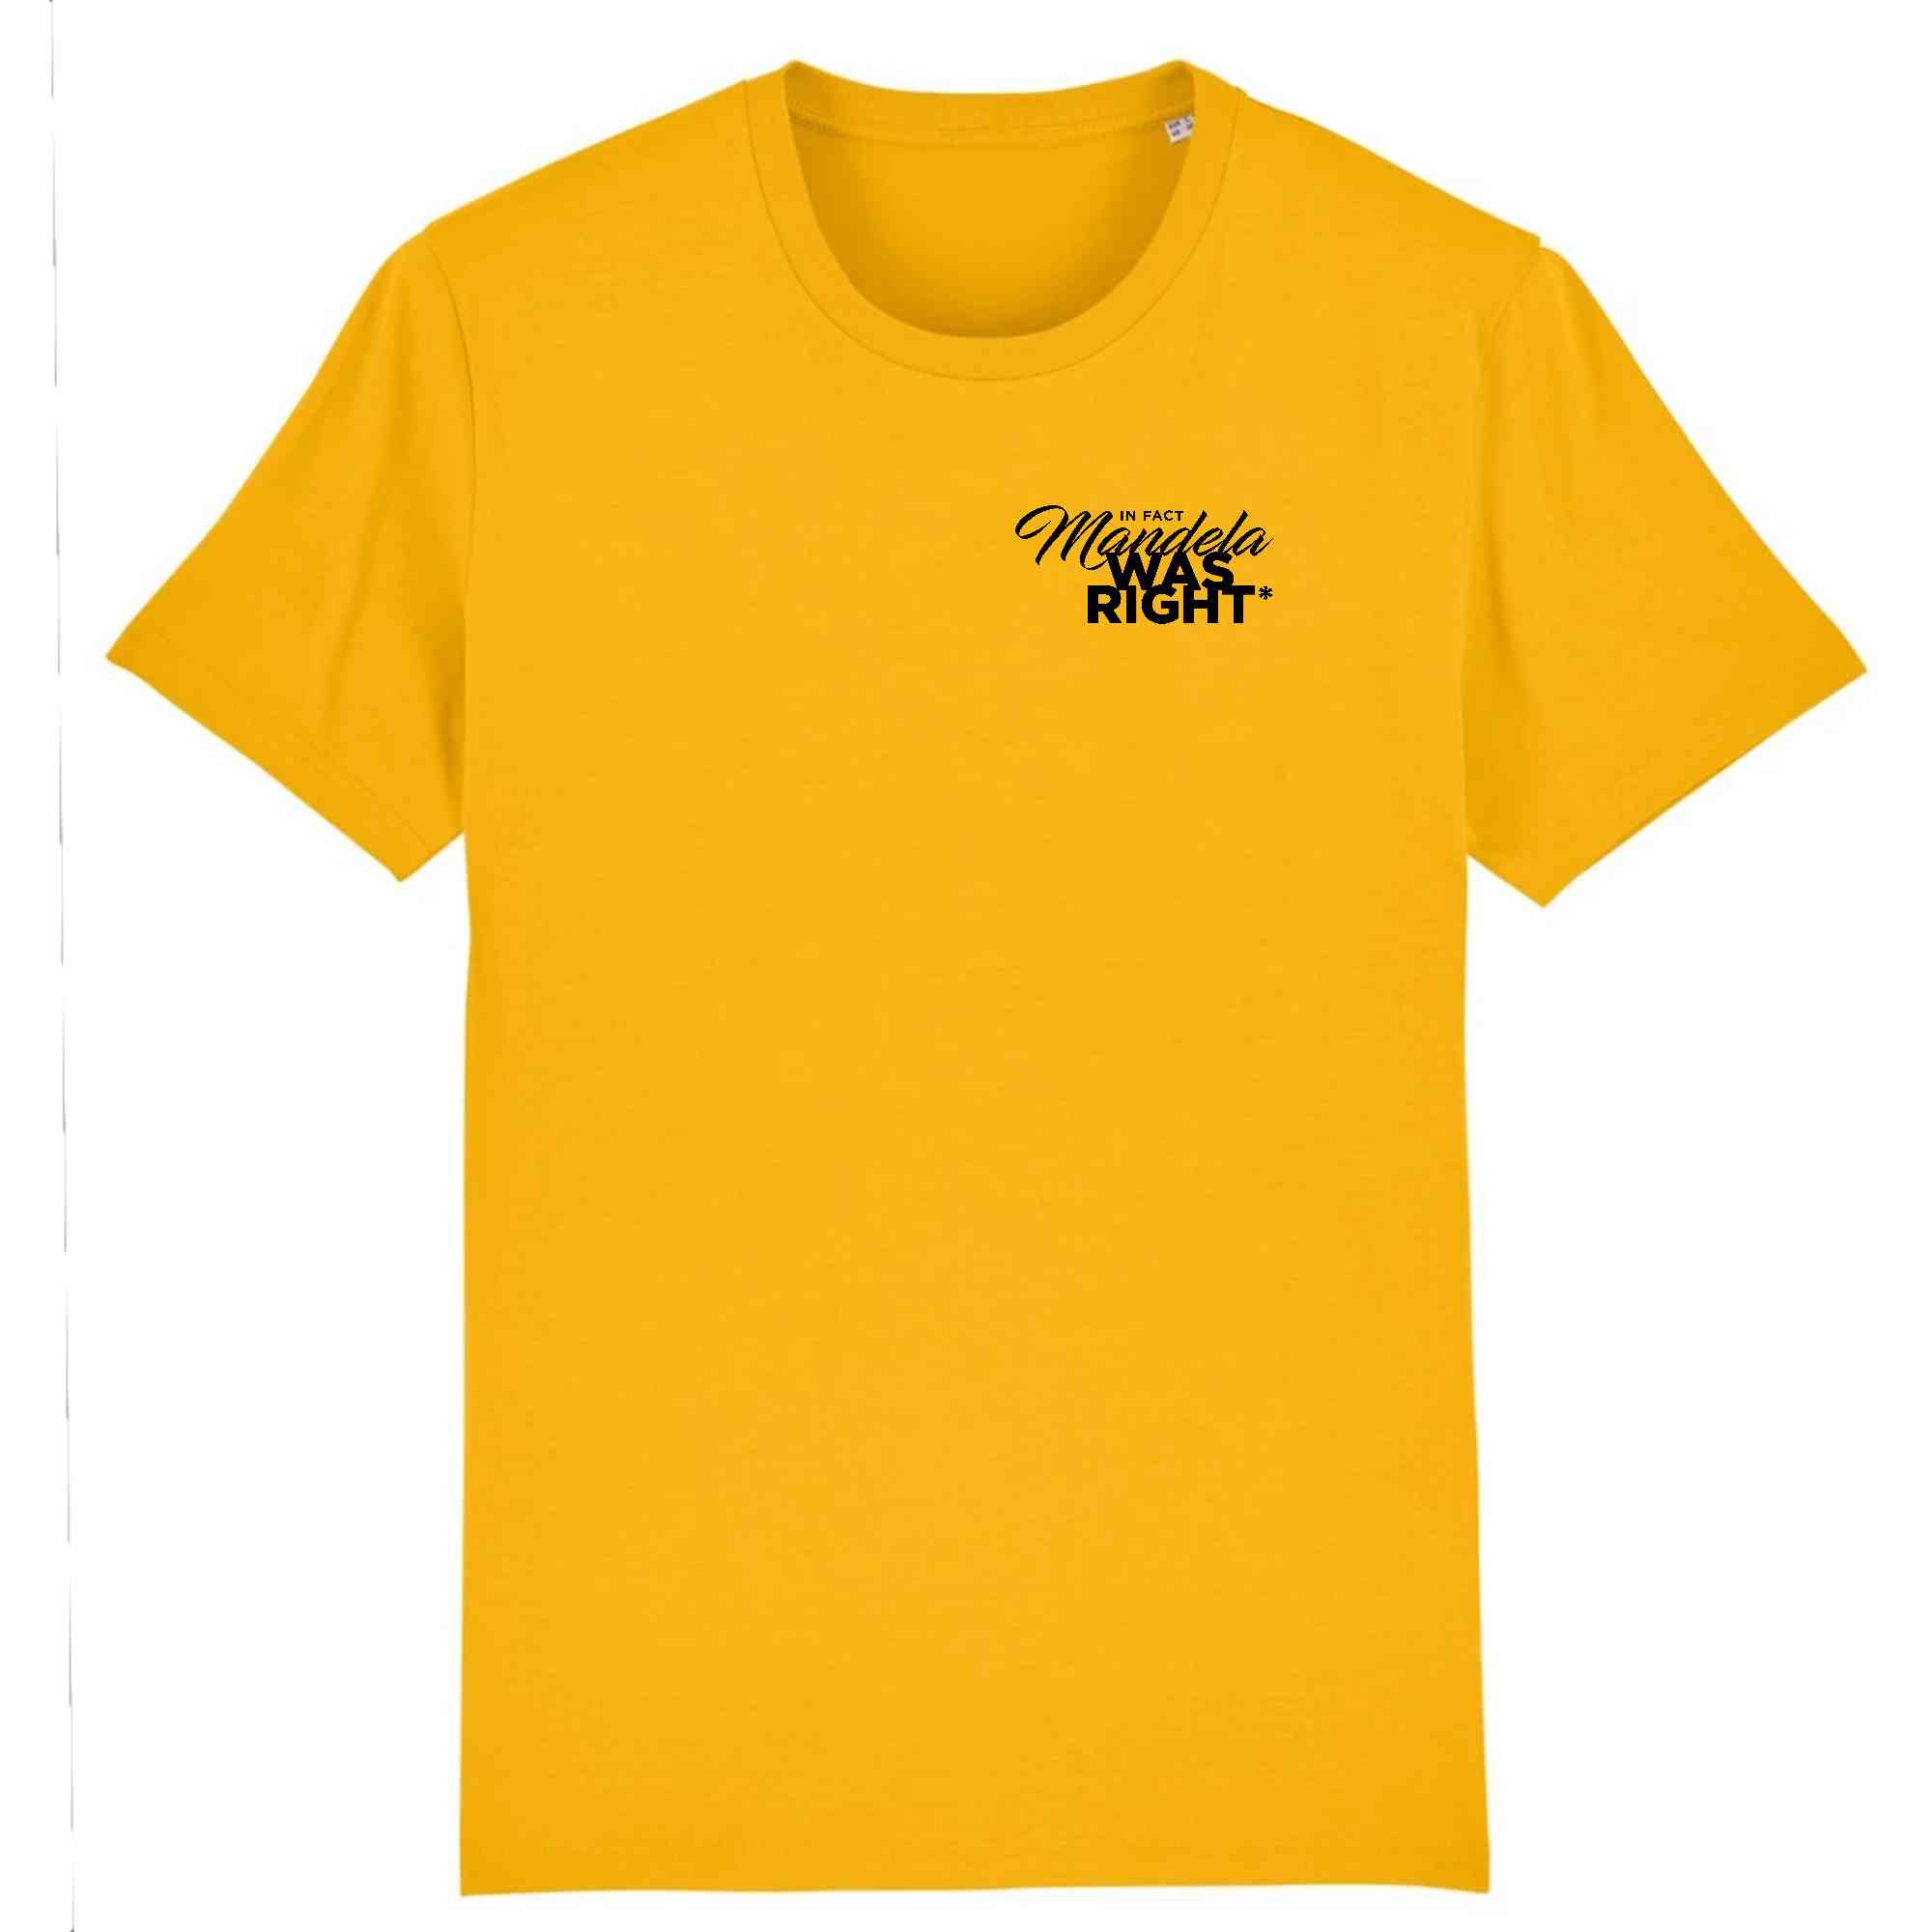 T-shirt jaune et noir en coton bio Mandella WAS RIGHT - Collection Tshirt inspirant